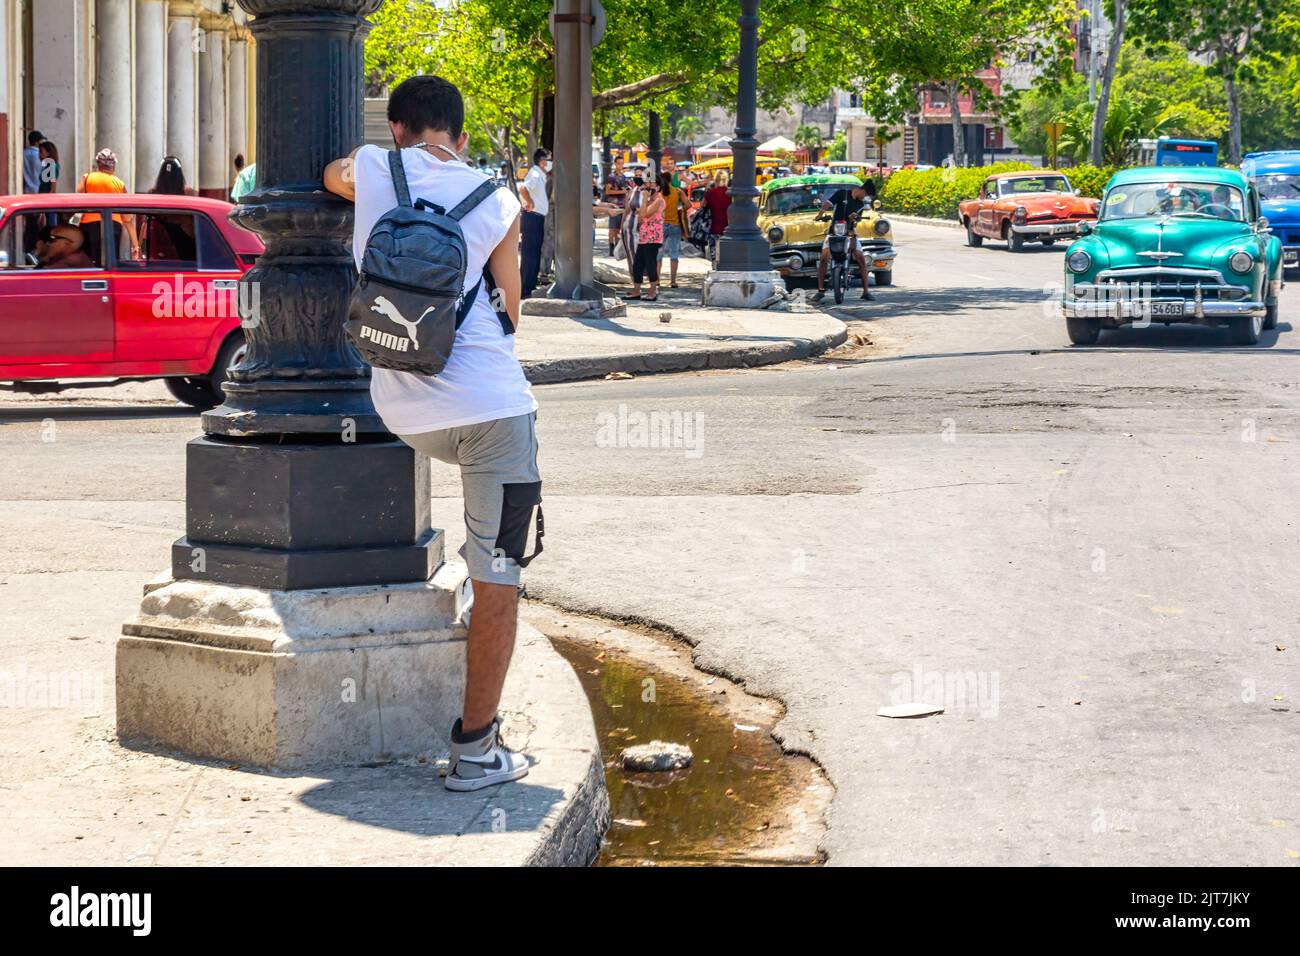 Un jeune homme s'appuie sur le poteau d'une lumière de rue. Une voiture d'époque conduit dans le quartier du centre-ville. L'eau sale stagne près du trottoir Banque D'Images